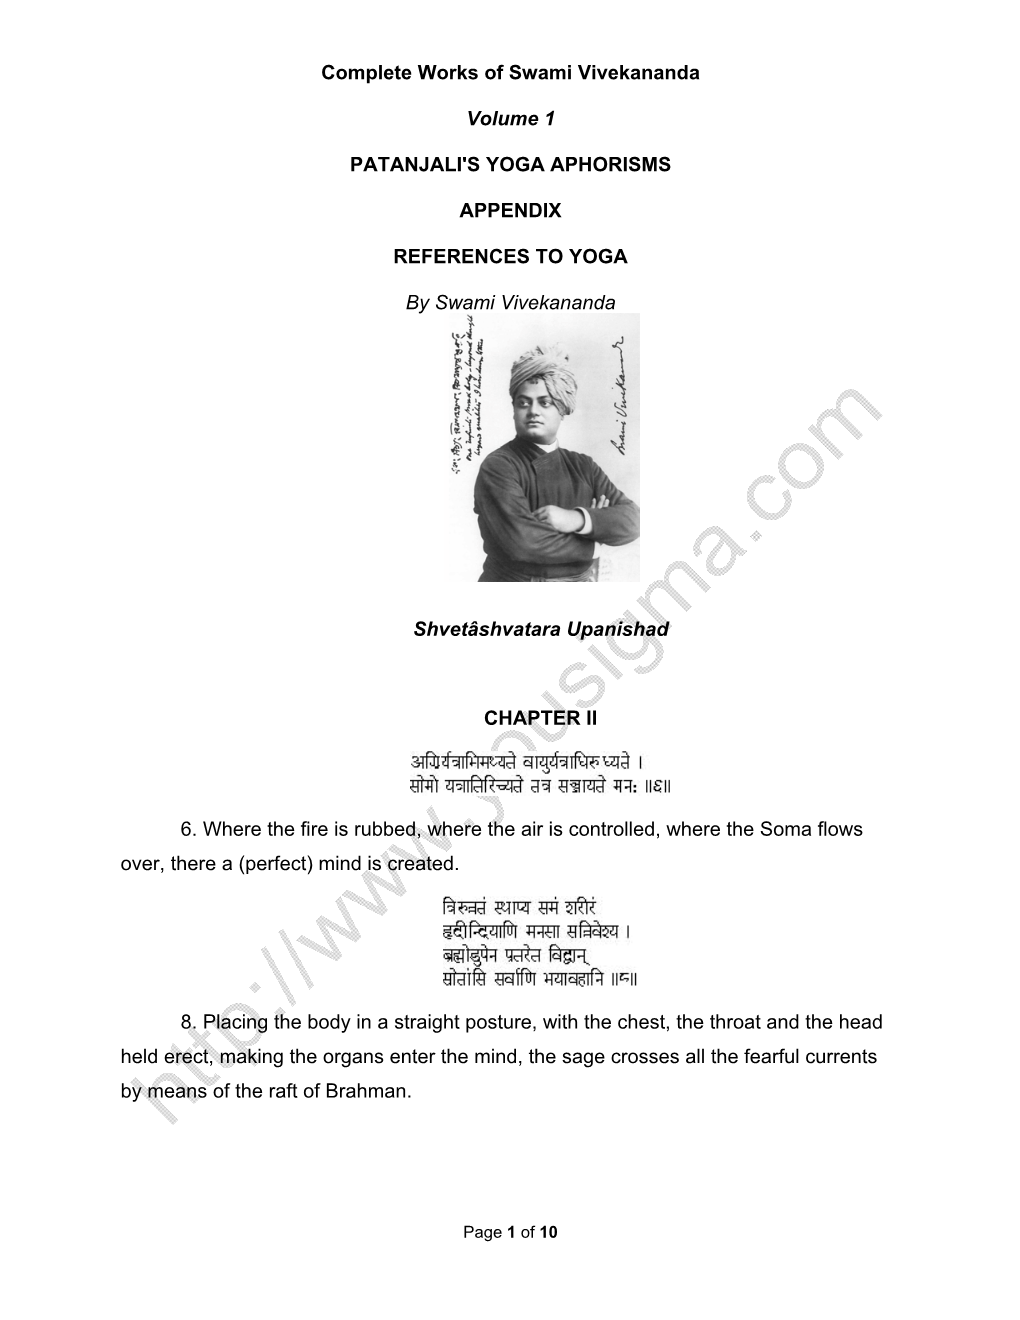 Complete Works of Swami Vivekananda Volume 1 REFE